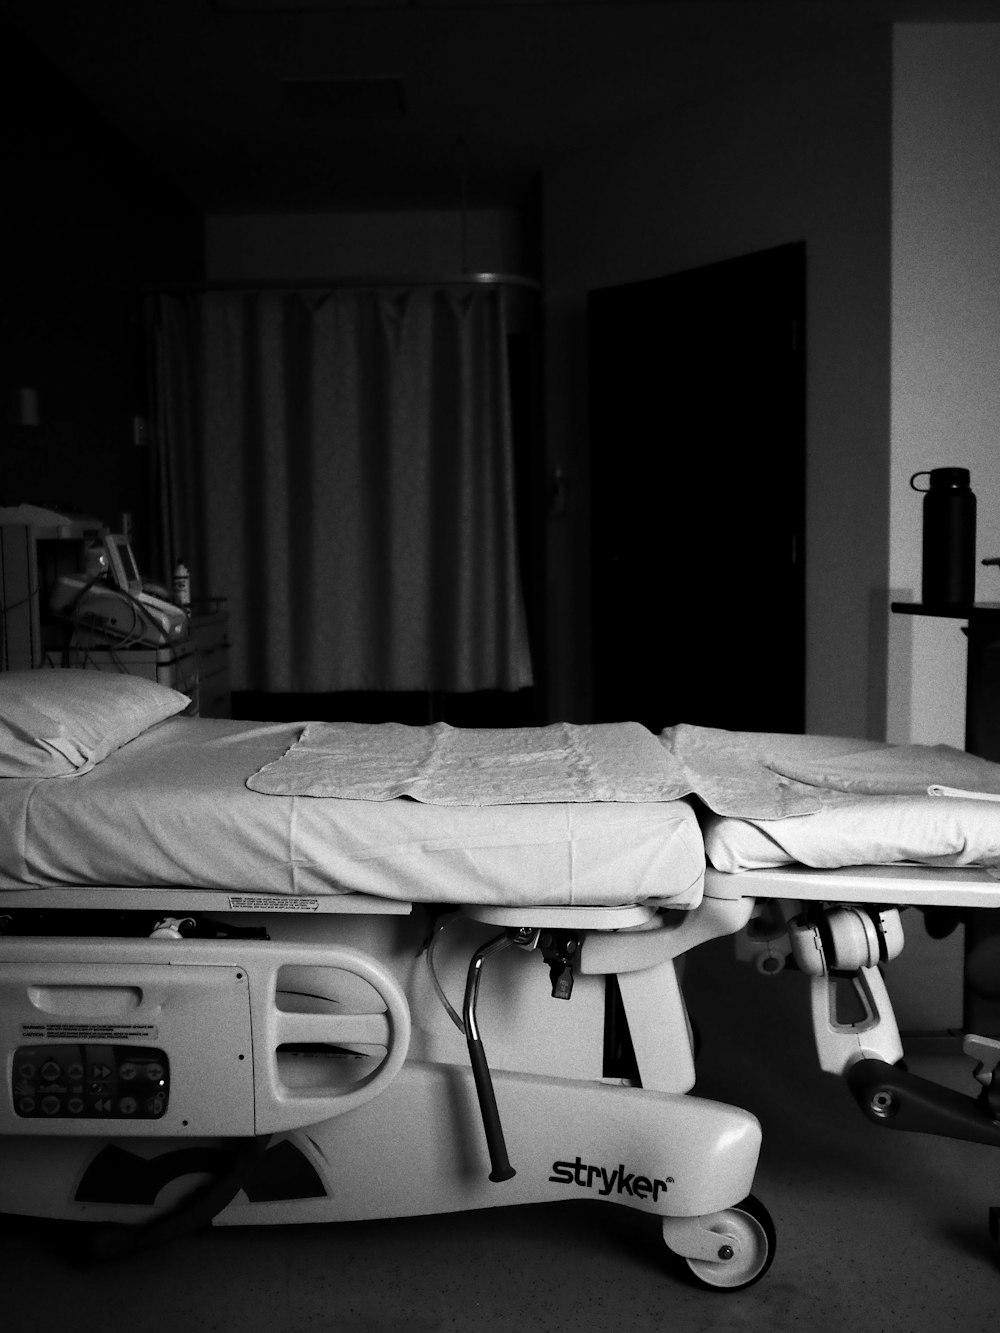 Una foto en blanco y negro de una cama de hospital